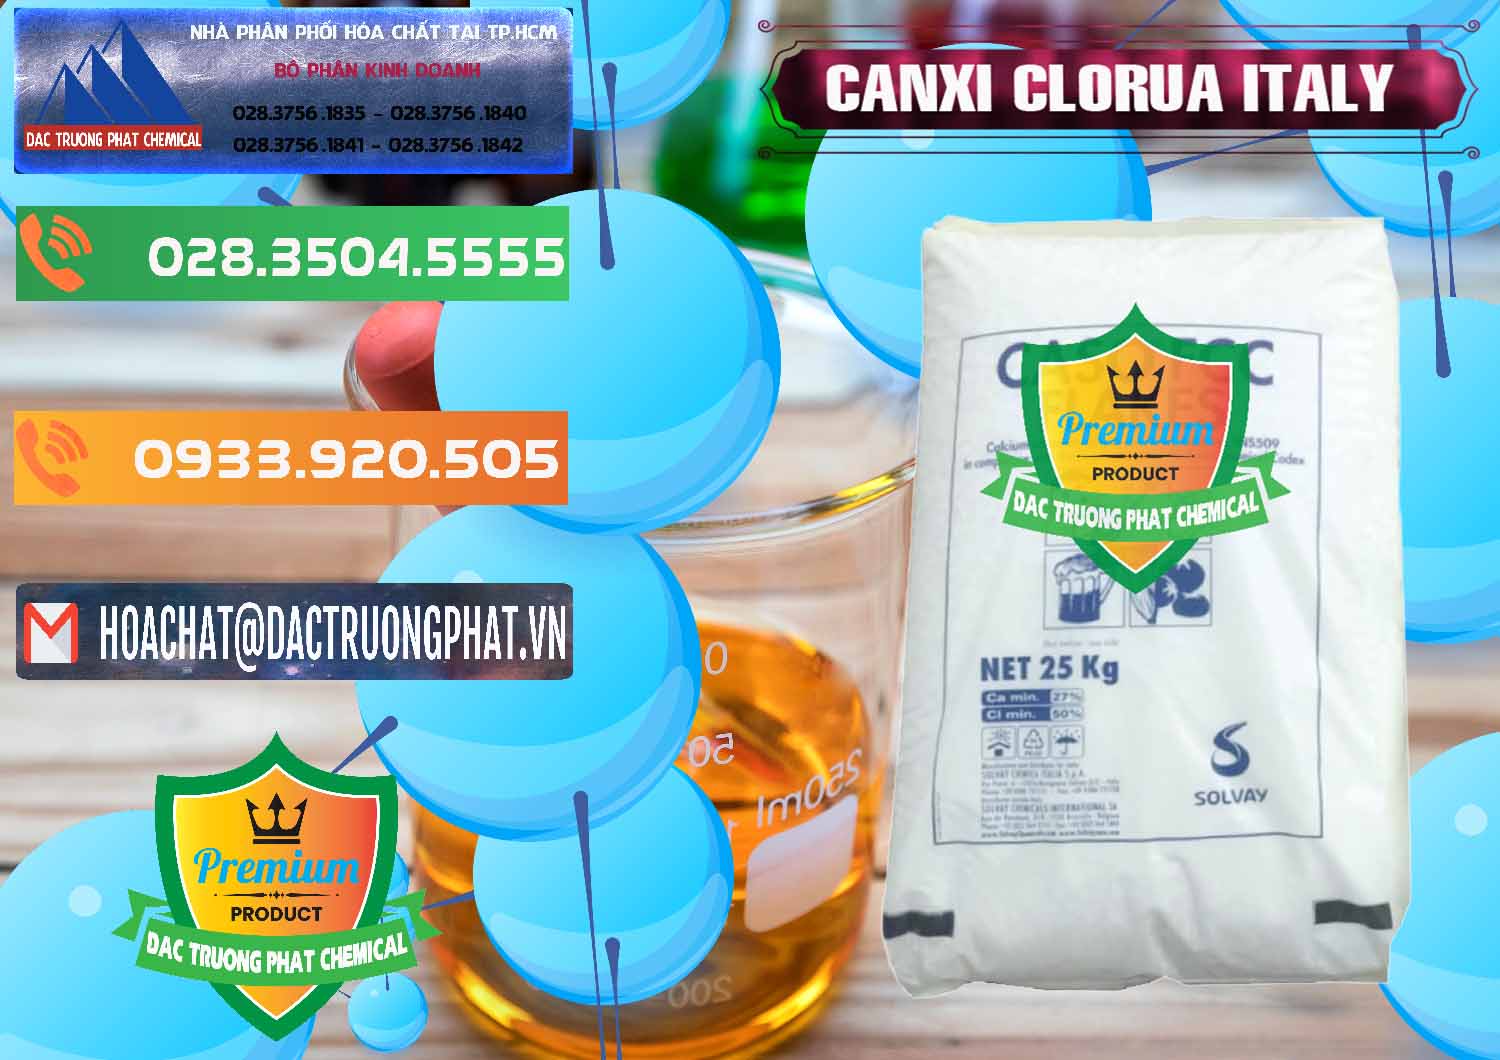 Cung cấp & bán CaCl2 – Canxi Clorua Food Grade Ý Italy - 0435 - Nơi chuyên kinh doanh - cung cấp hóa chất tại TP.HCM - hoachatxulynuoc.com.vn